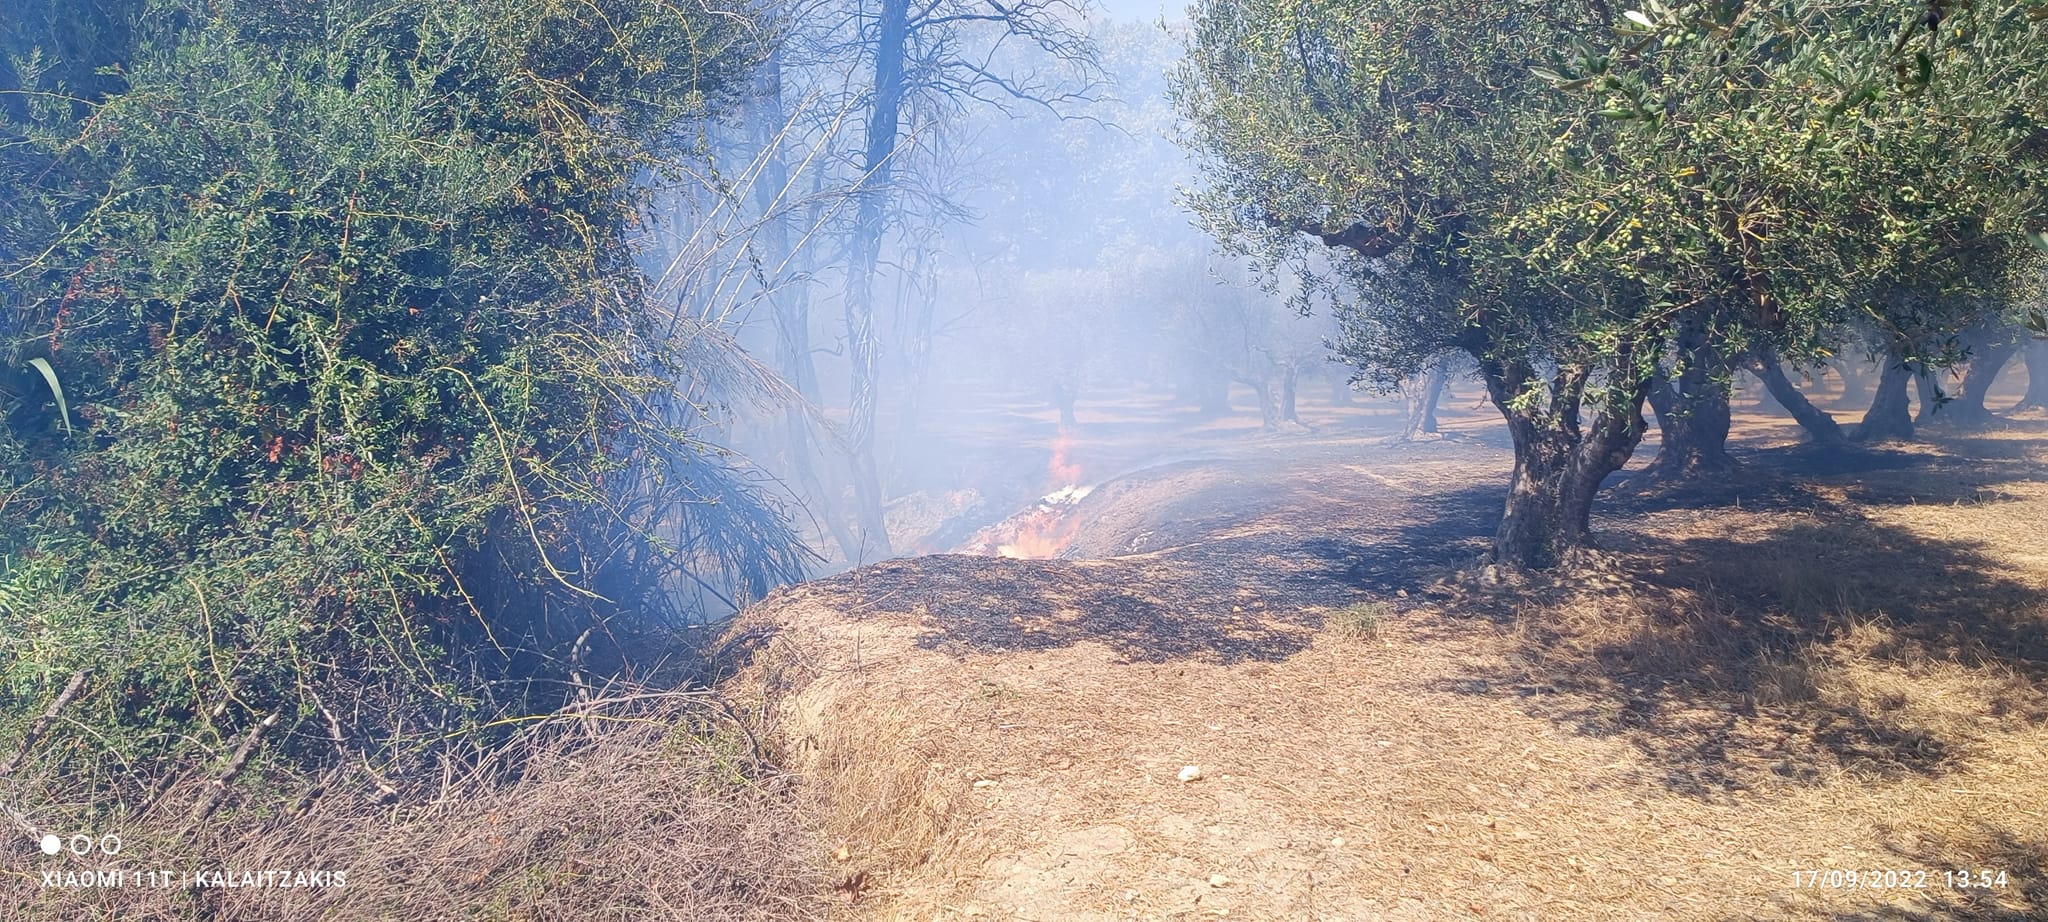 Υπό πλήρη έλεγχο η φωτιά σε ρεματιά στα Δελιανά του Δήμου Πλατανιά